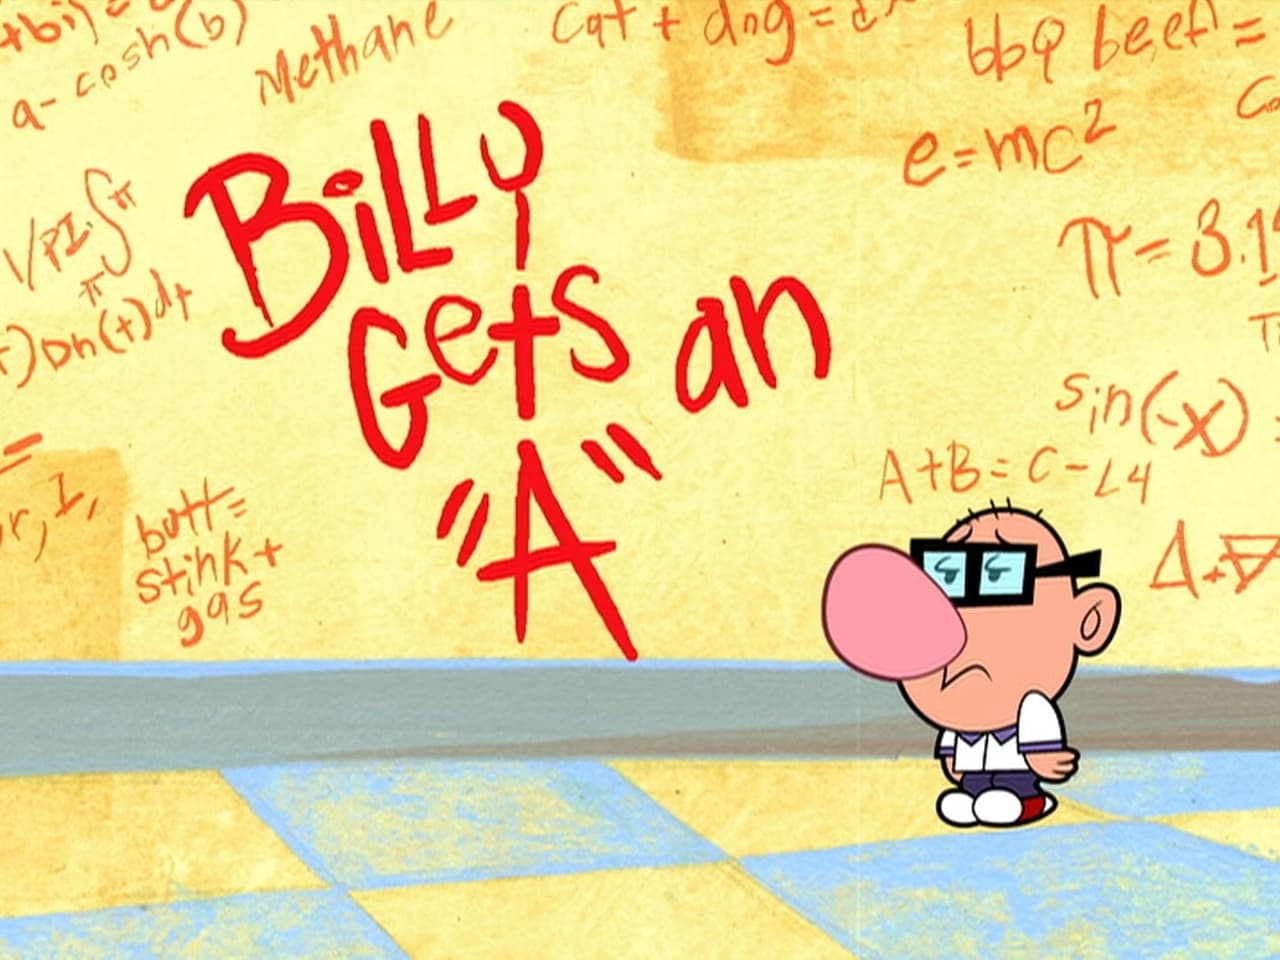 Billy Gets an A